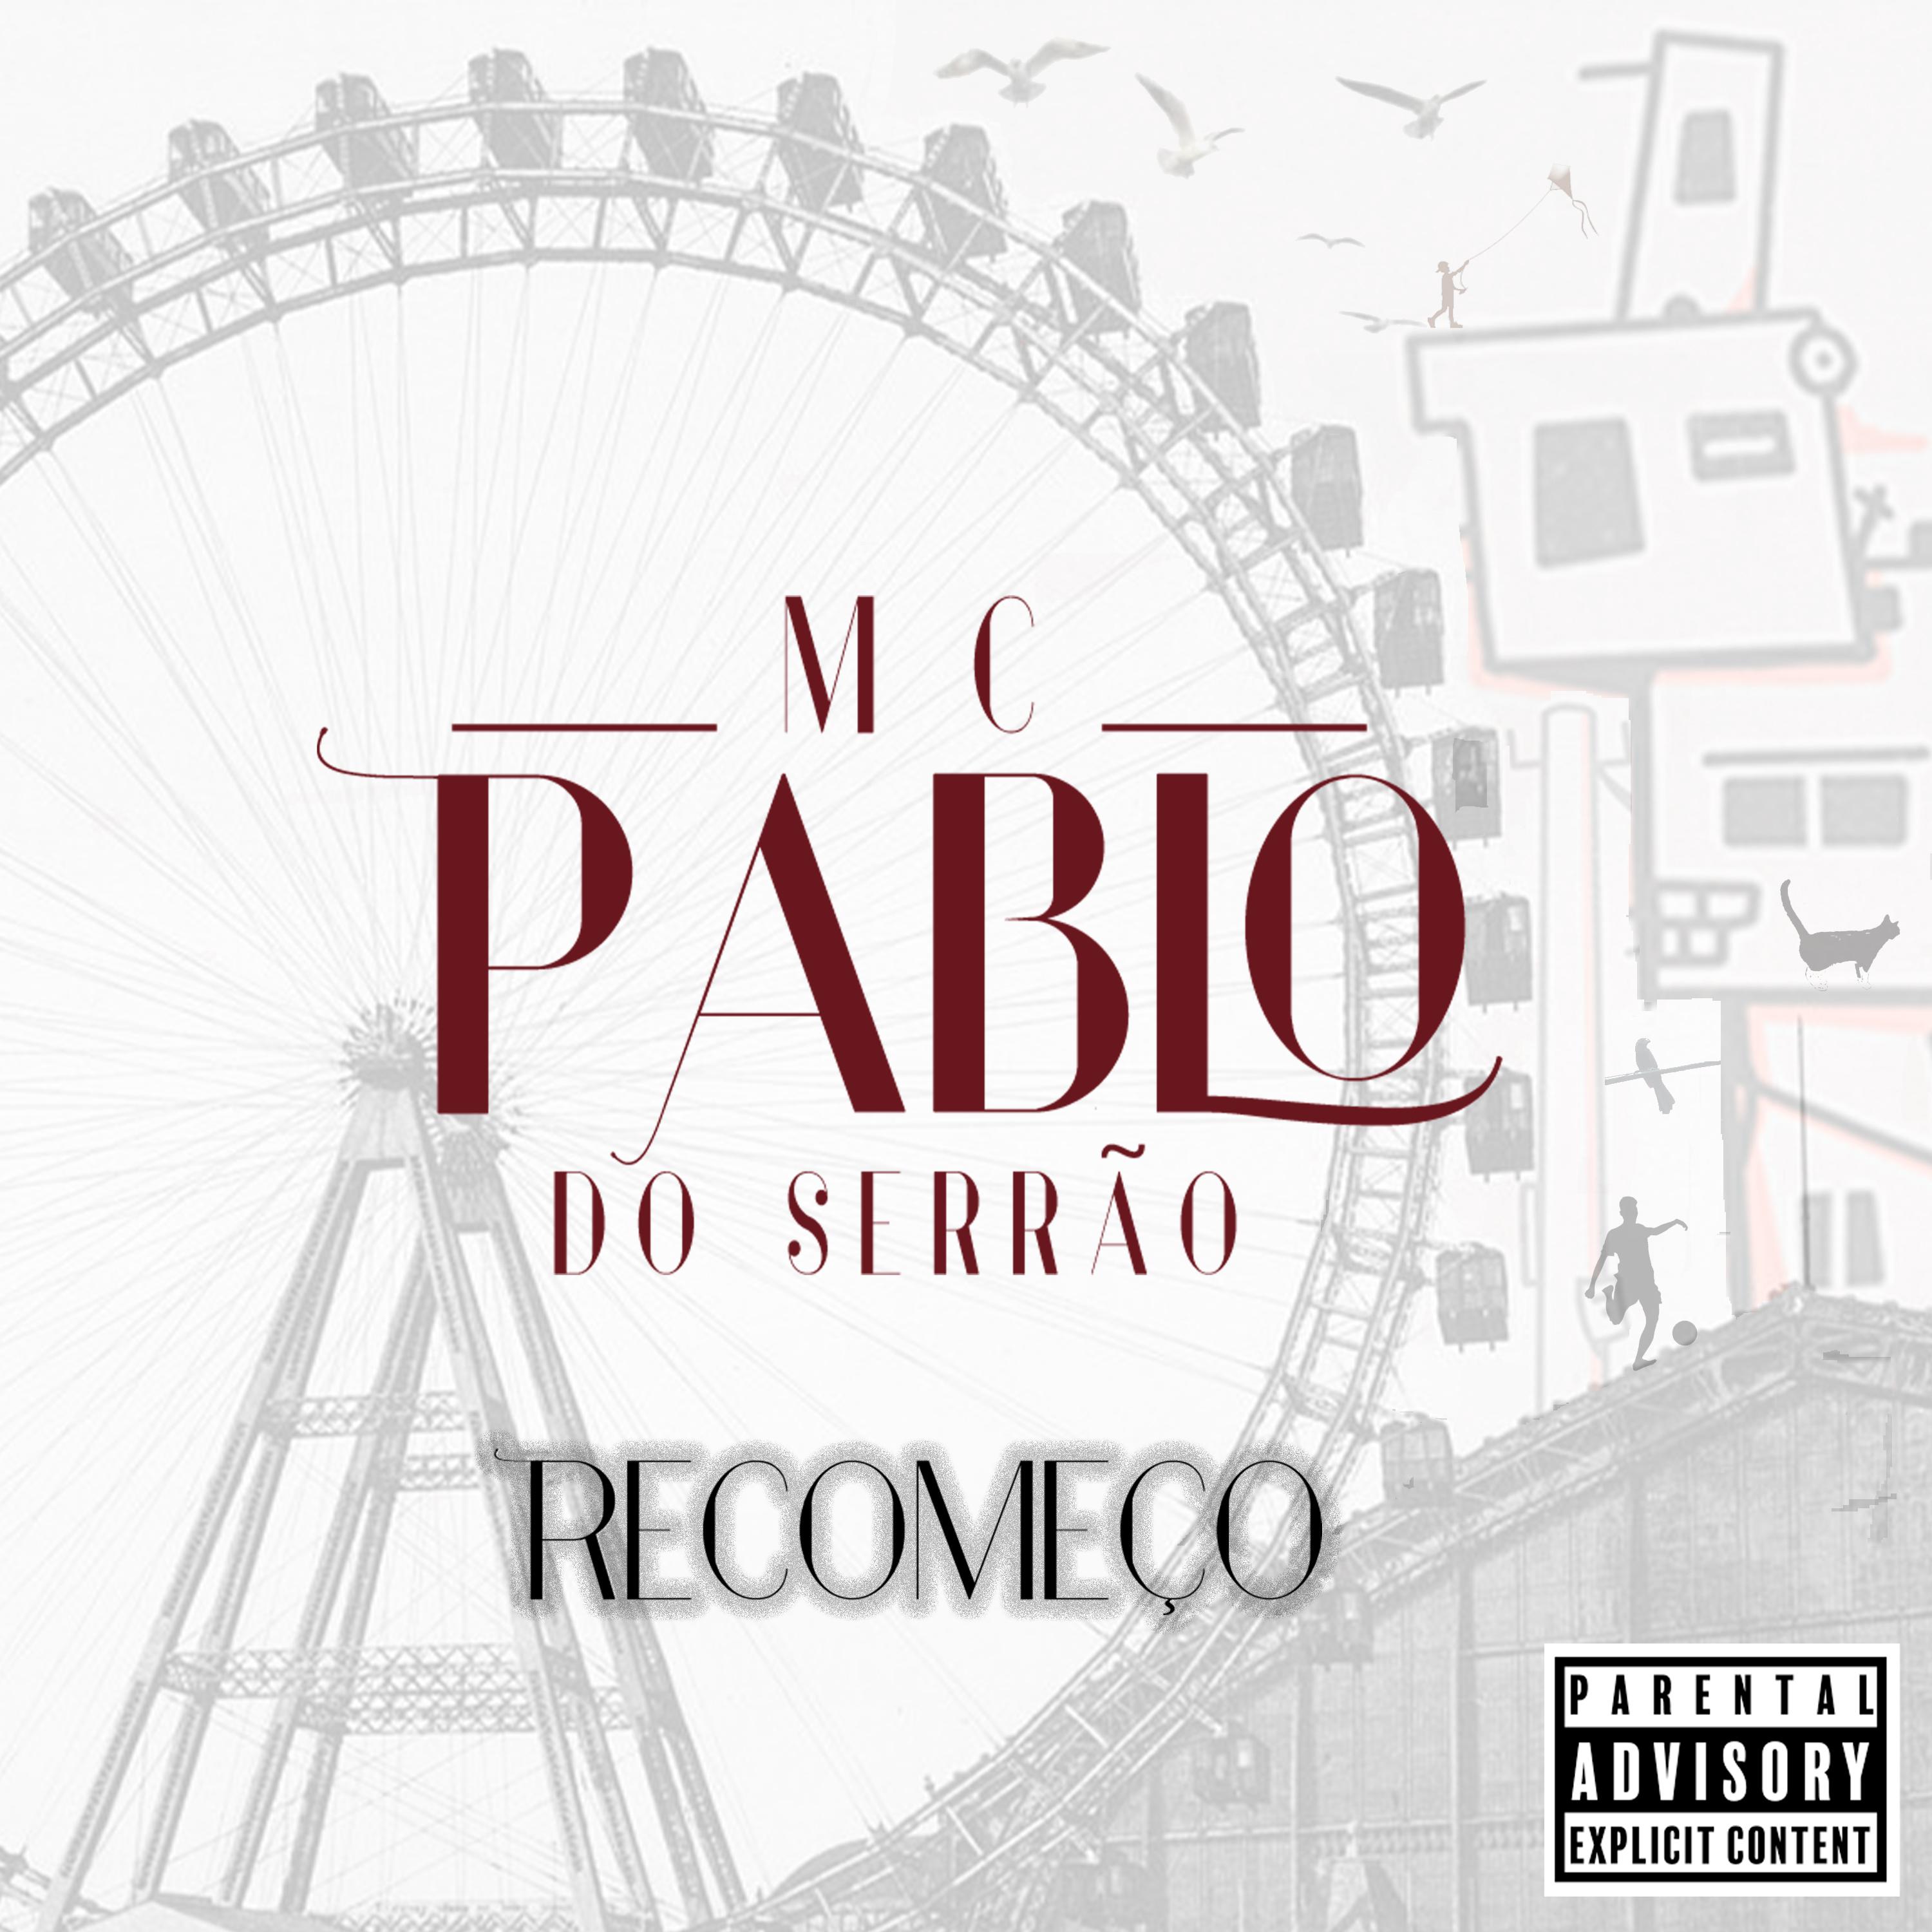 MC Pablo do Serrão - Confusão dos Lençóis